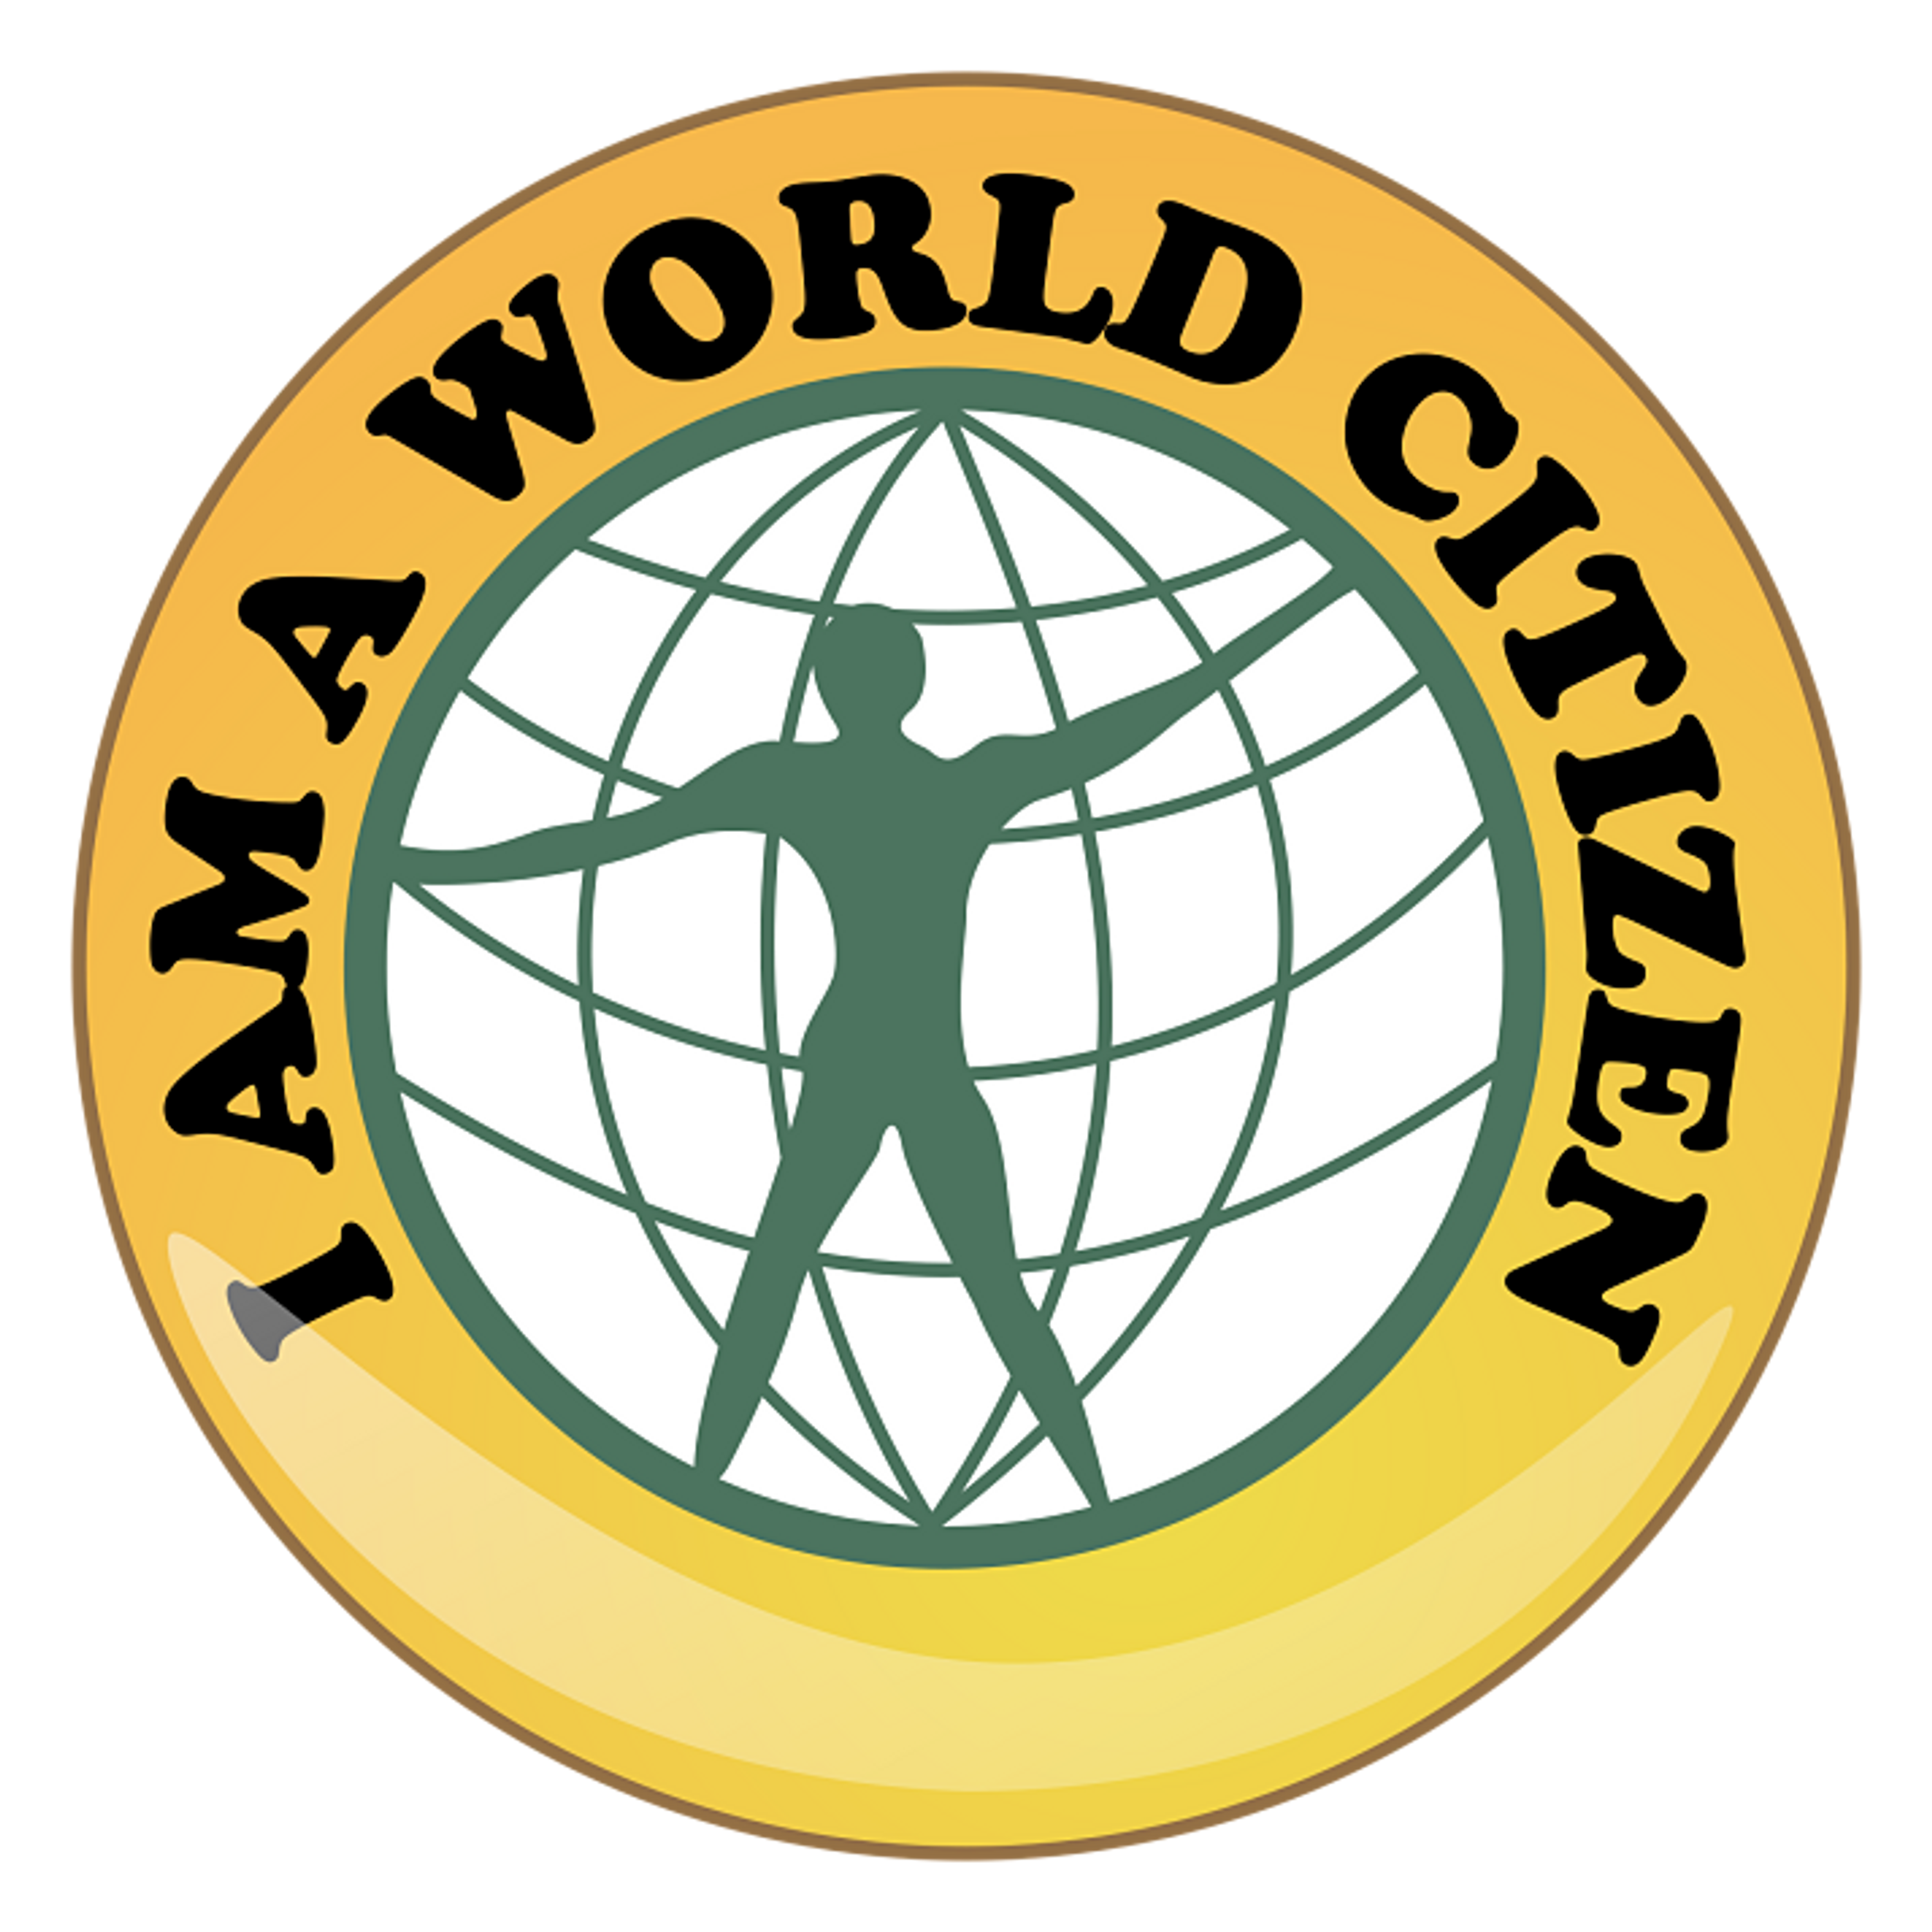 World_citizen_badge_opt